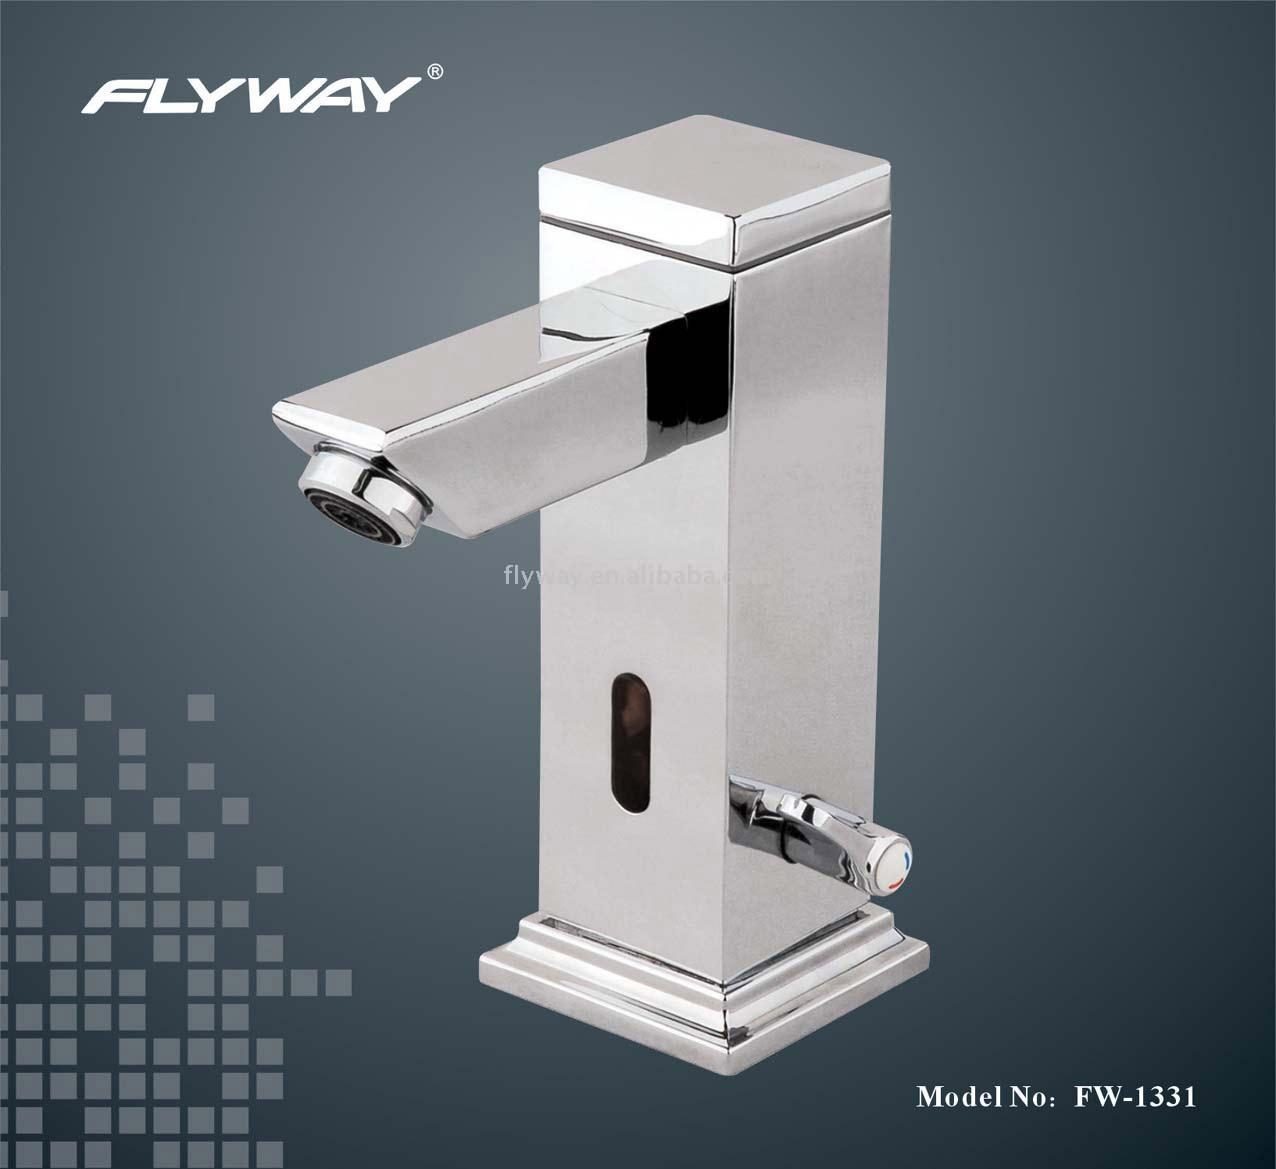  2 -Part System Automatic Sensing Faucet (2-Partie du système de détection automatique du robinet)